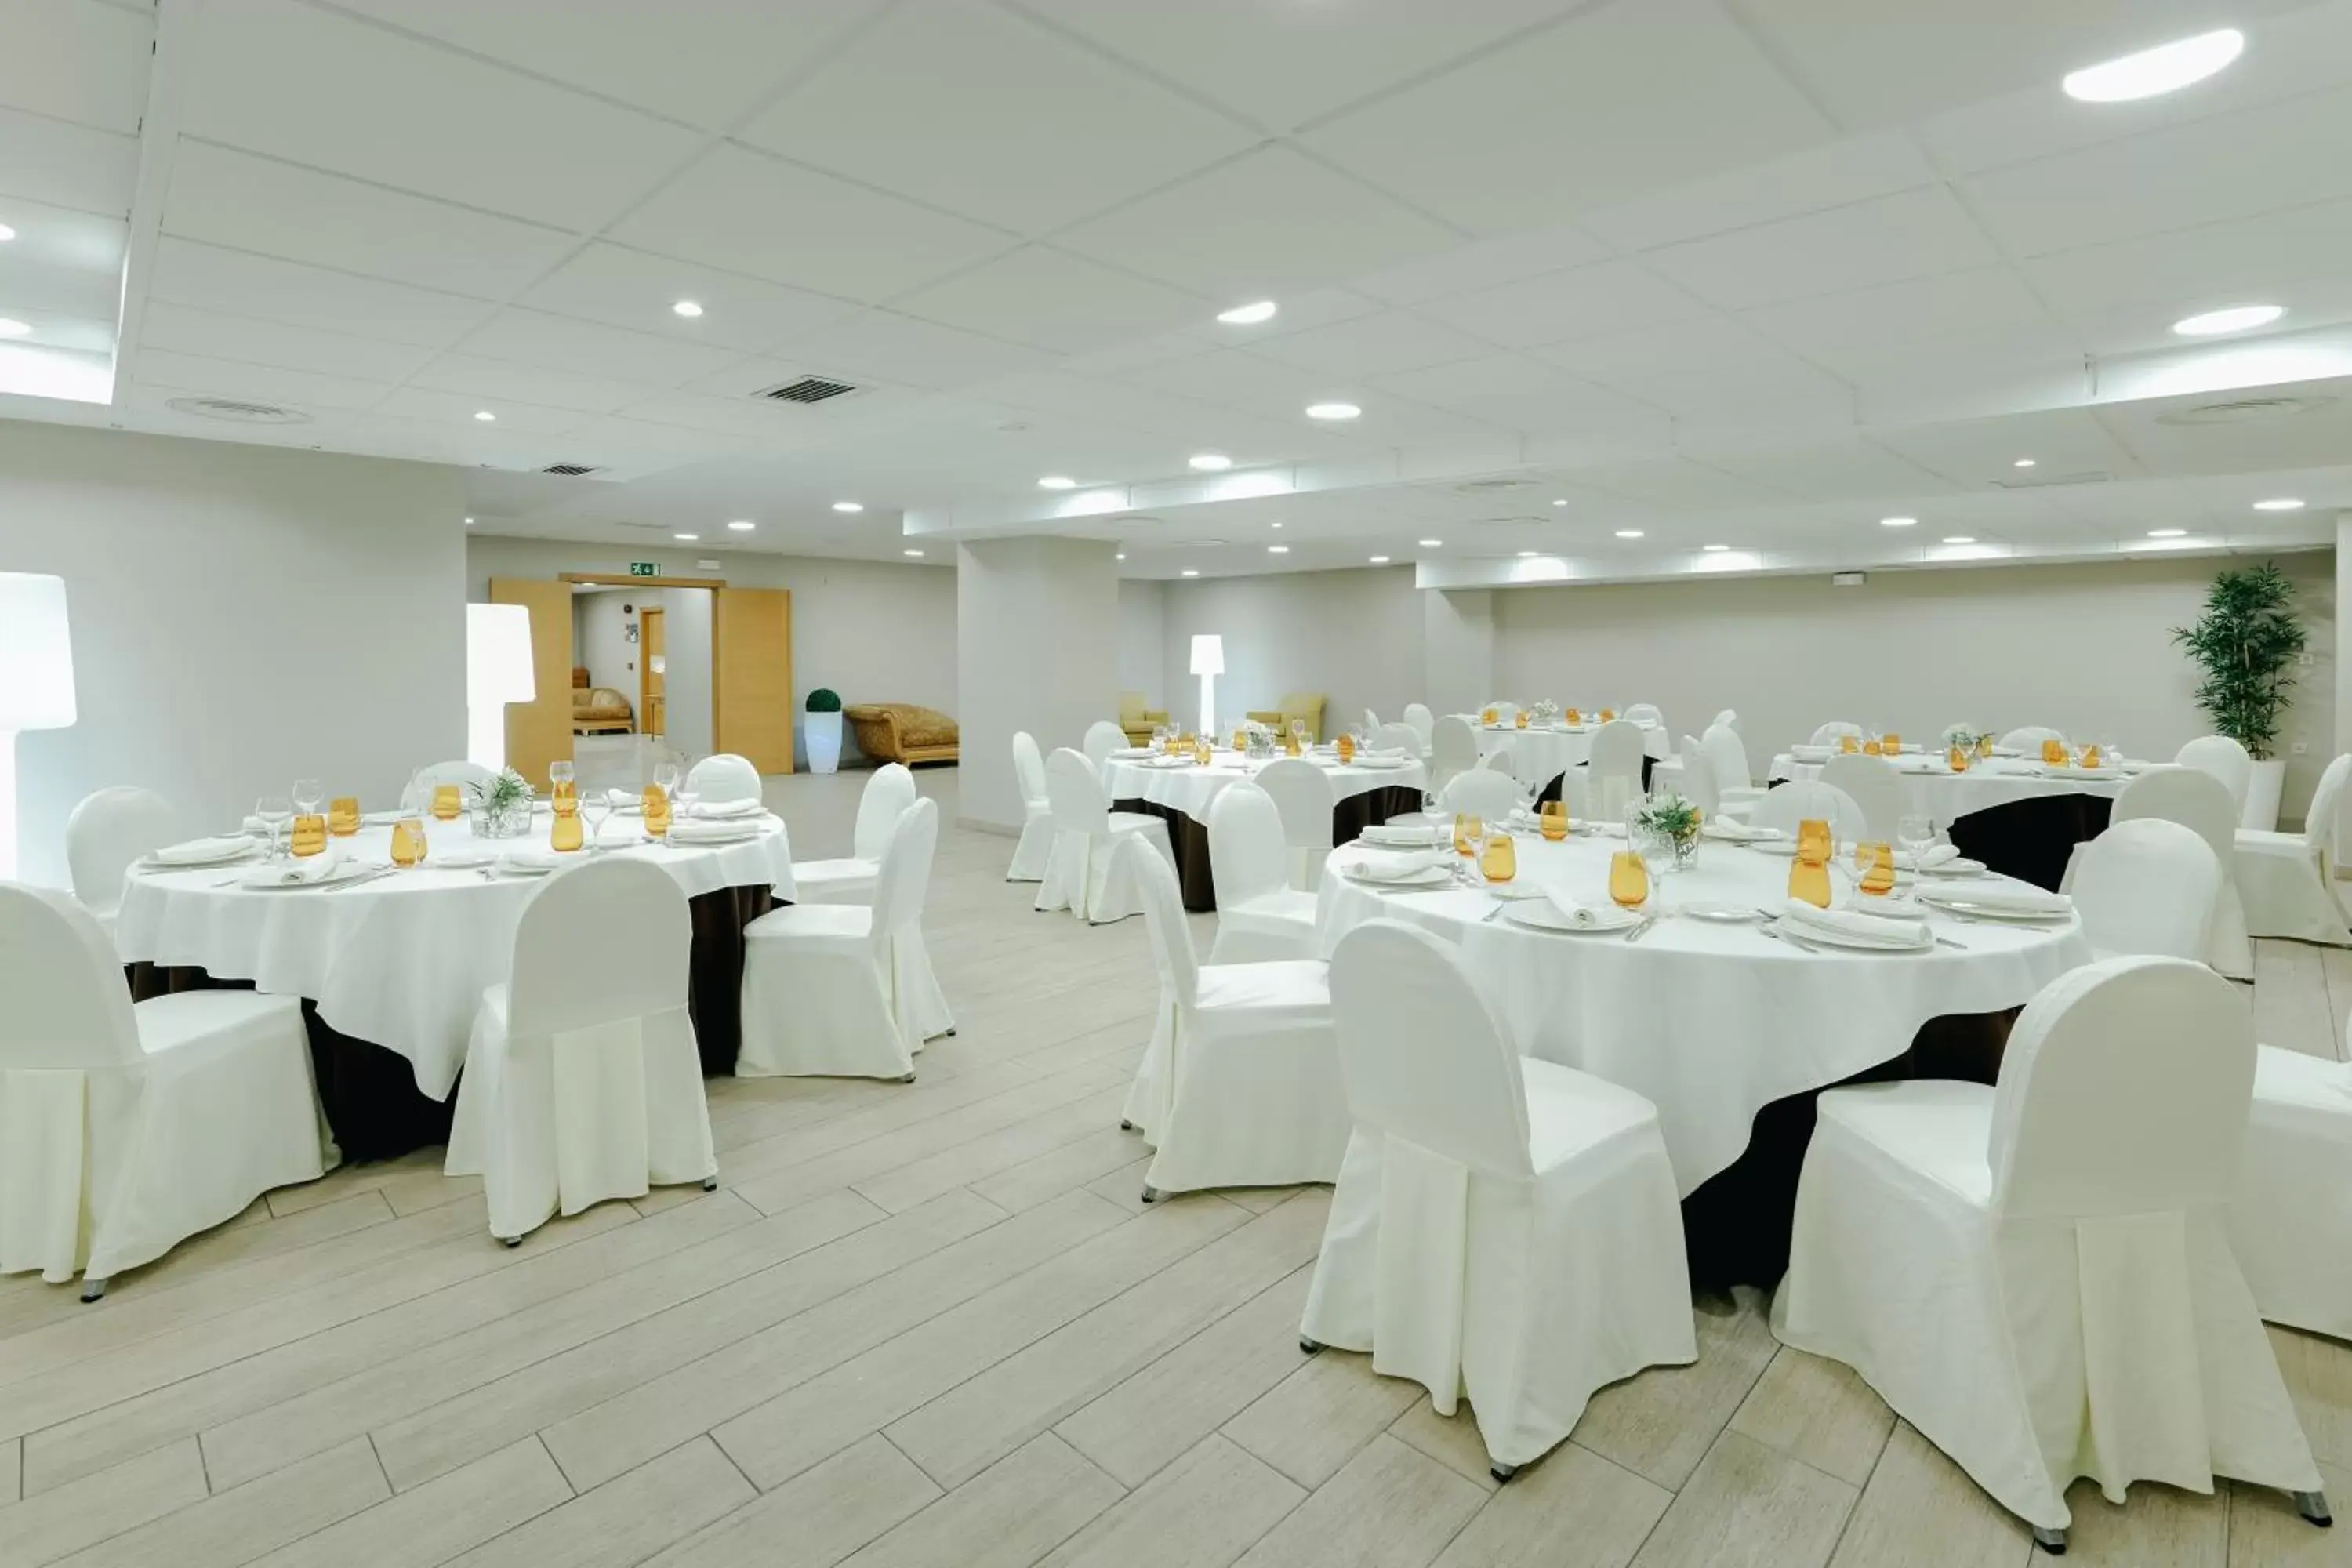 Banquet/Function facilities, Banquet Facilities in Hesperia Vigo